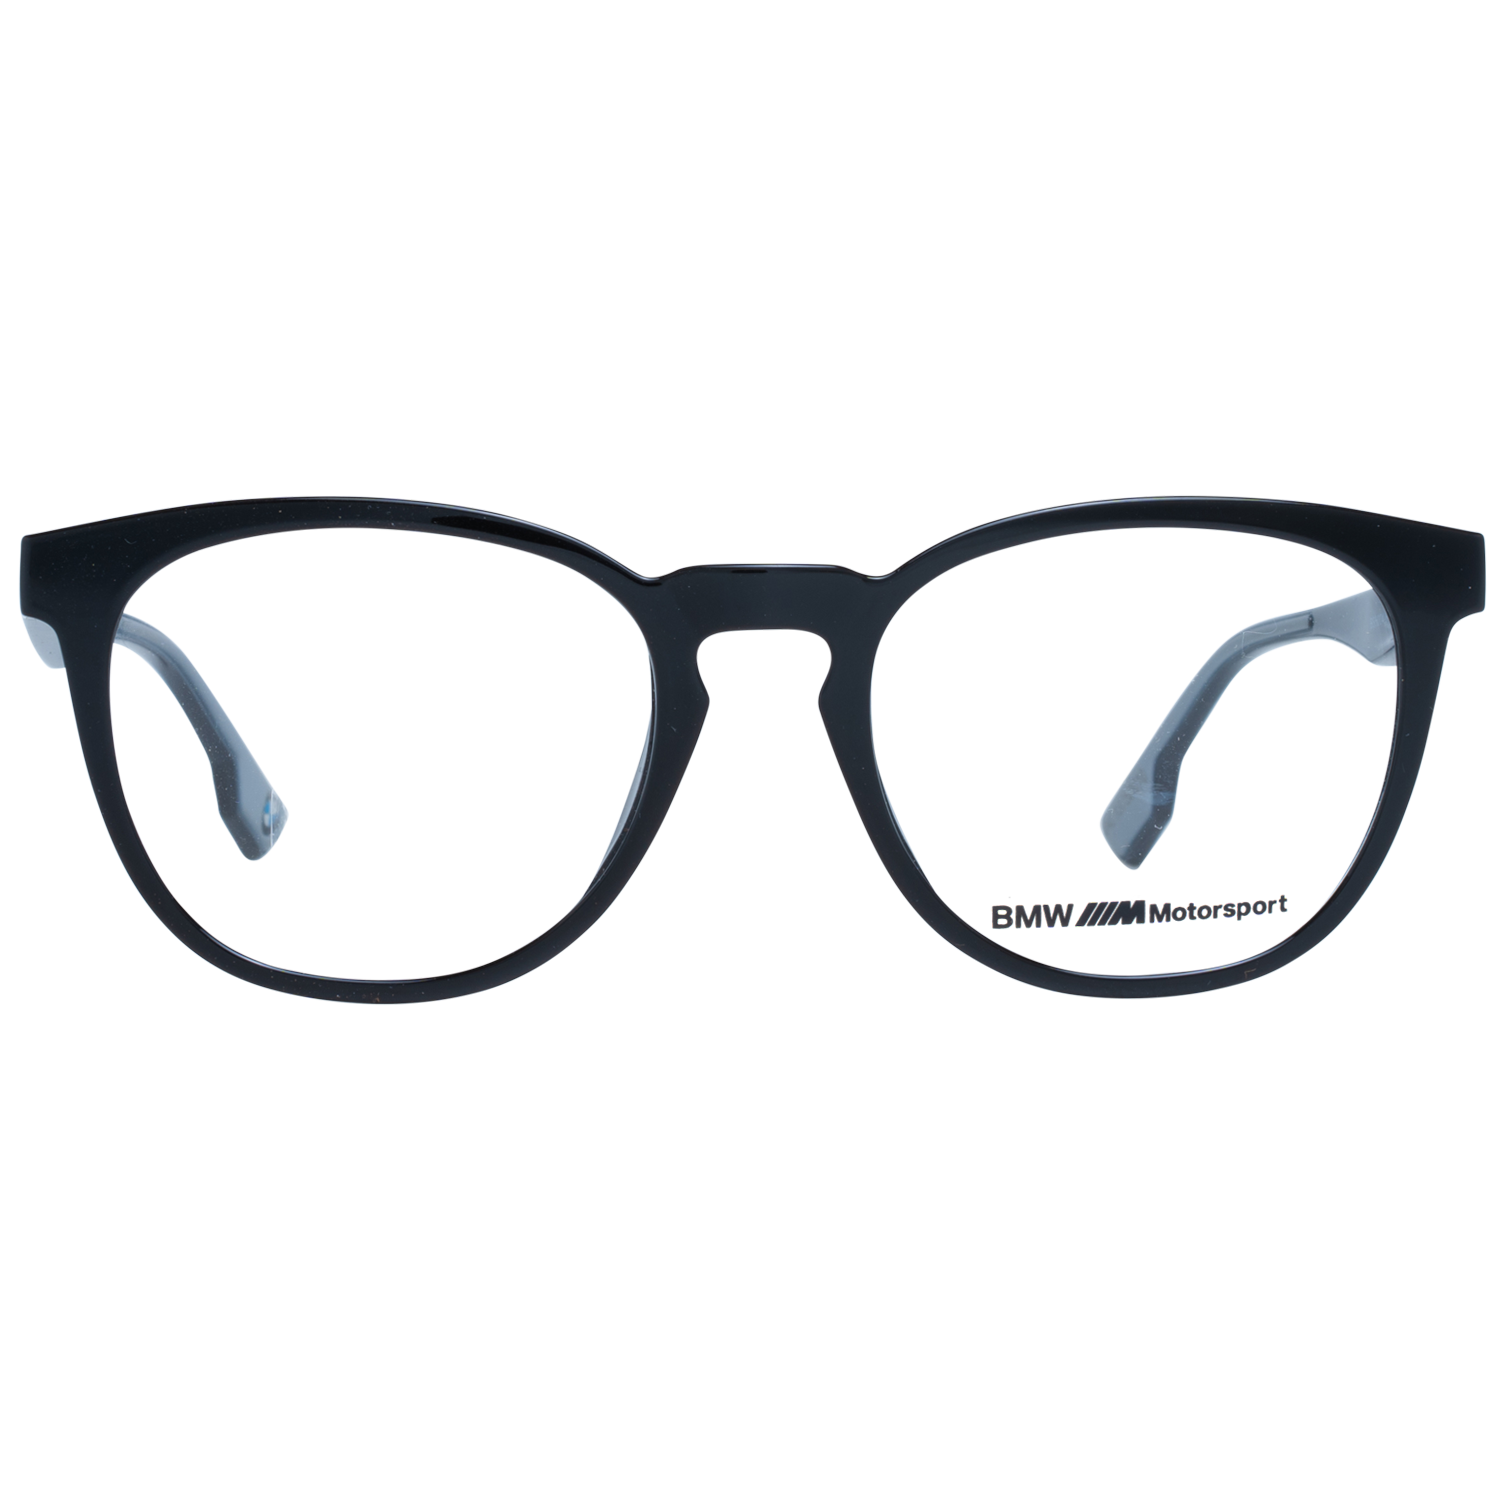 BMW Motorsport Frames BMW Motorsport Glasses Frames Eyeglasses BS5004-H 001 53mm Eyeglasses Eyewear UK USA Australia 